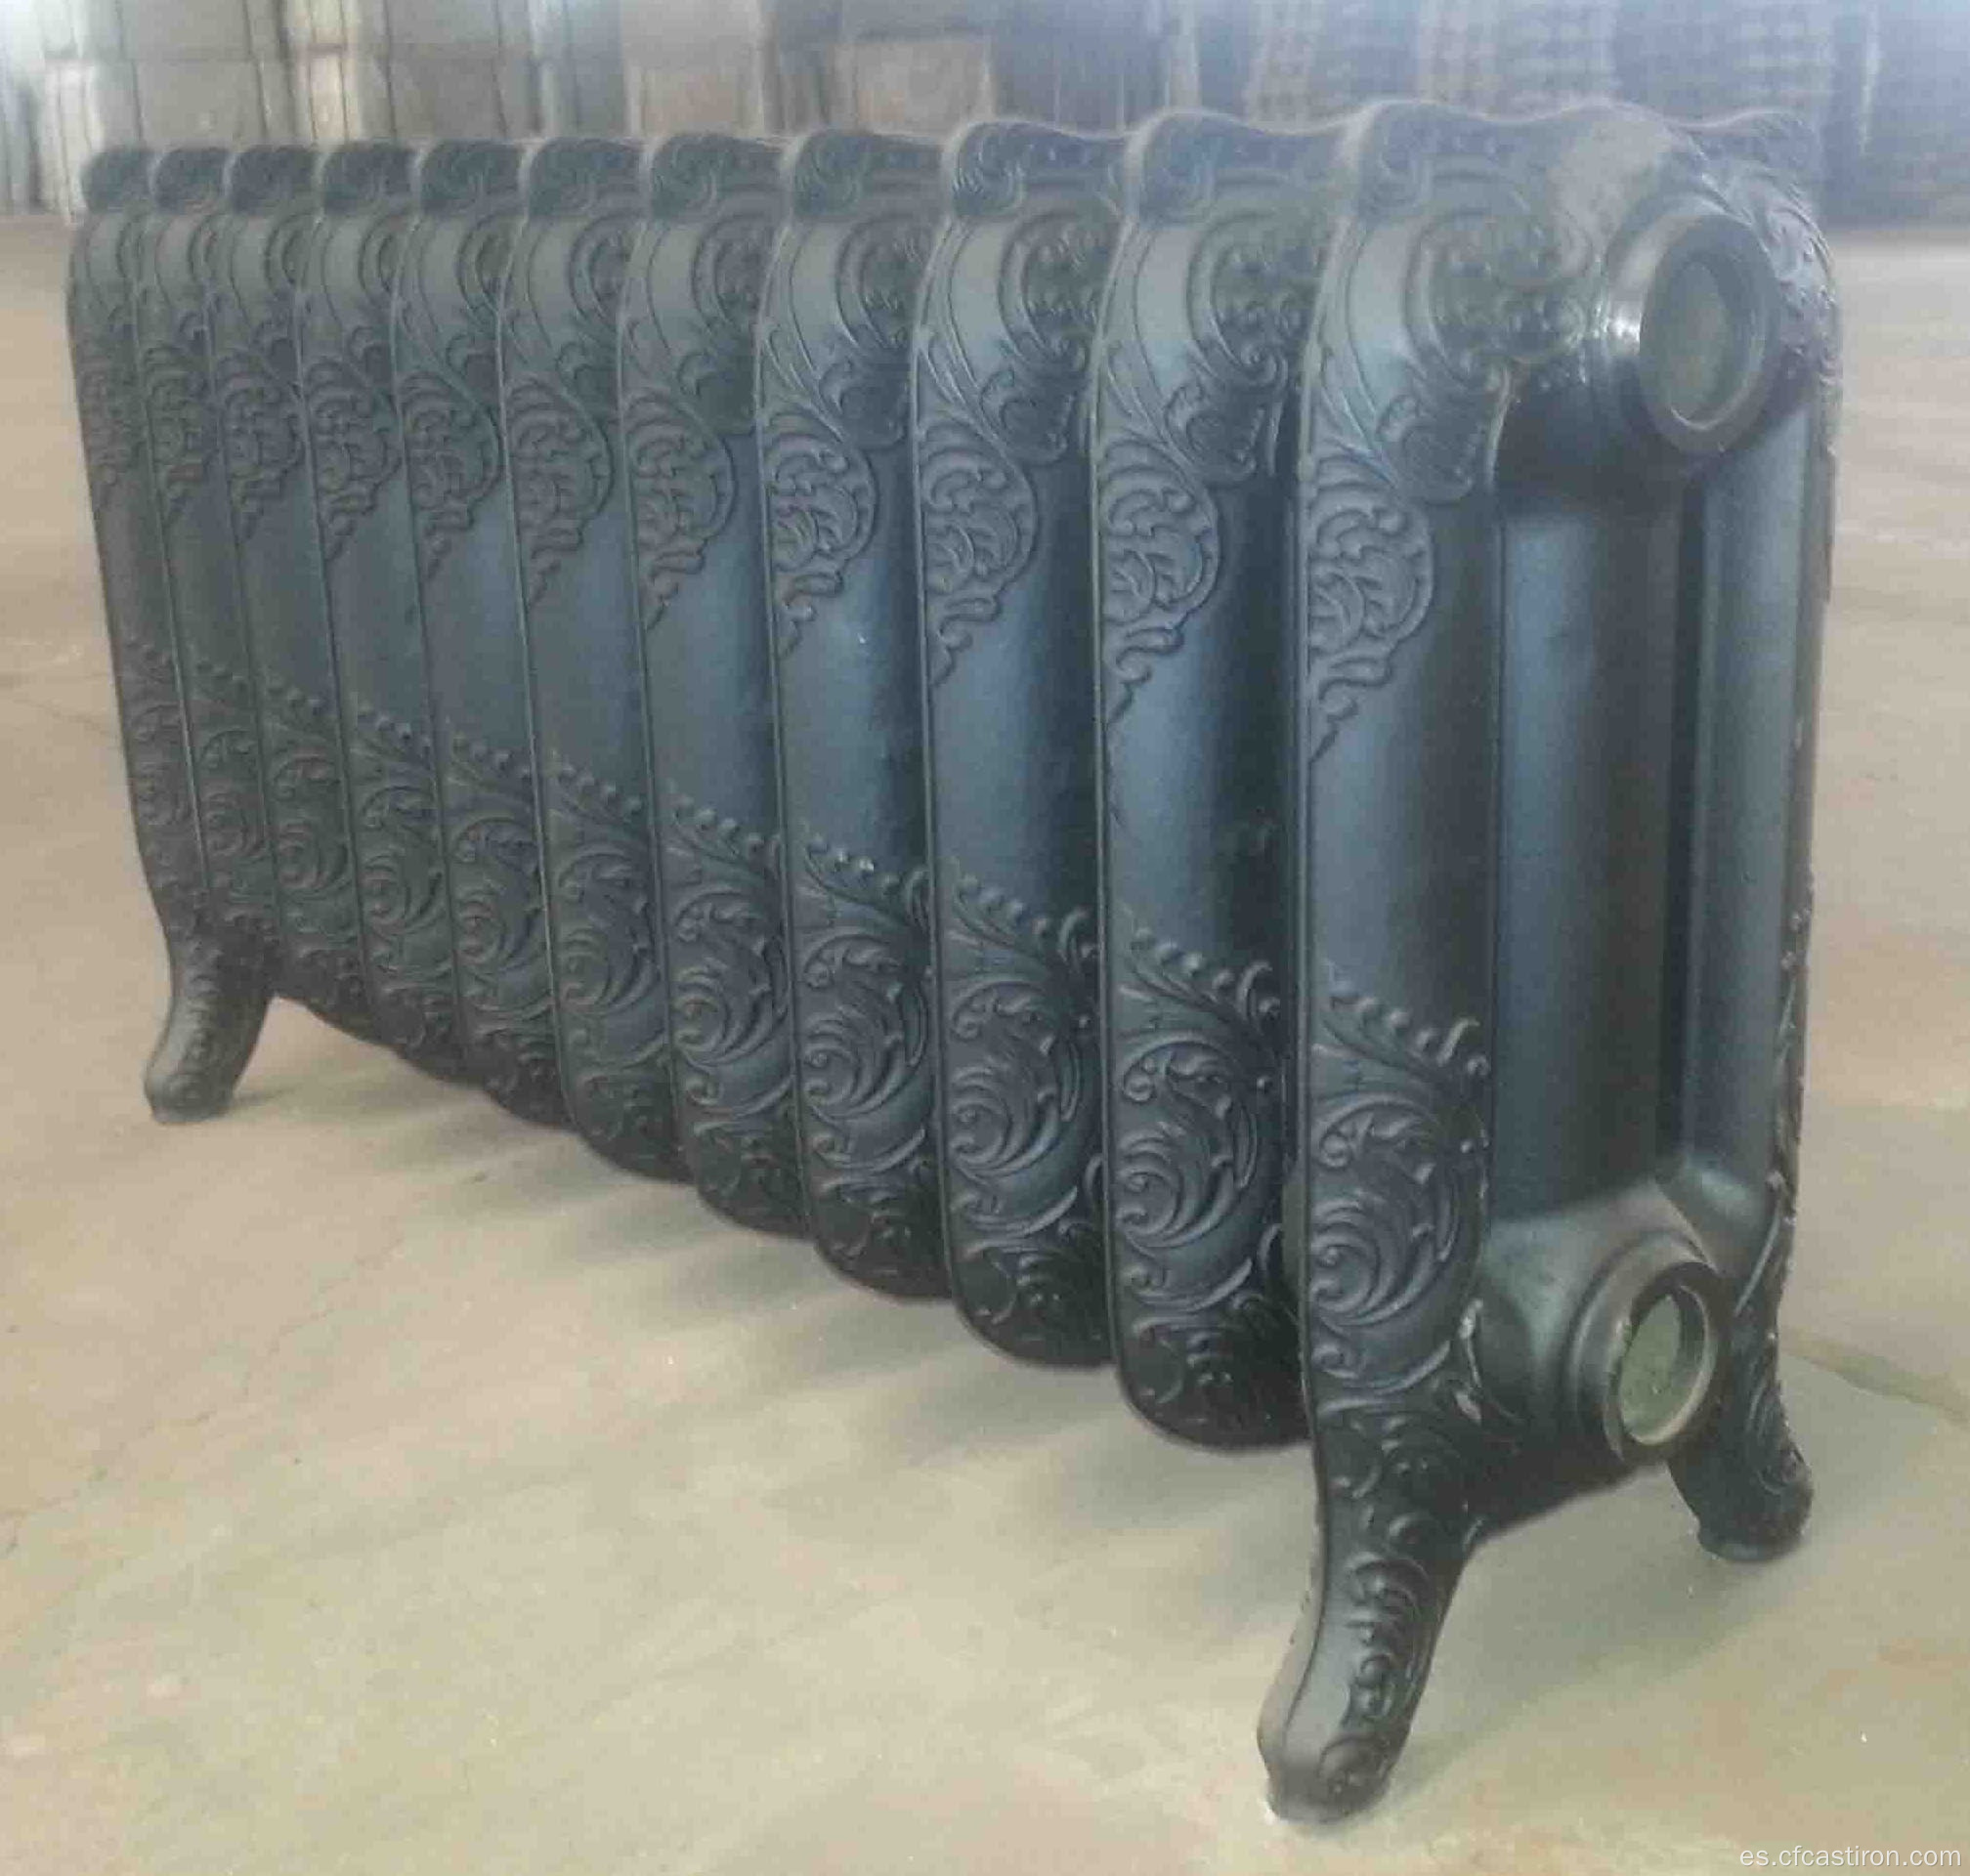 Radiador de hierro fundido 470, radiadores de sala de calefacción